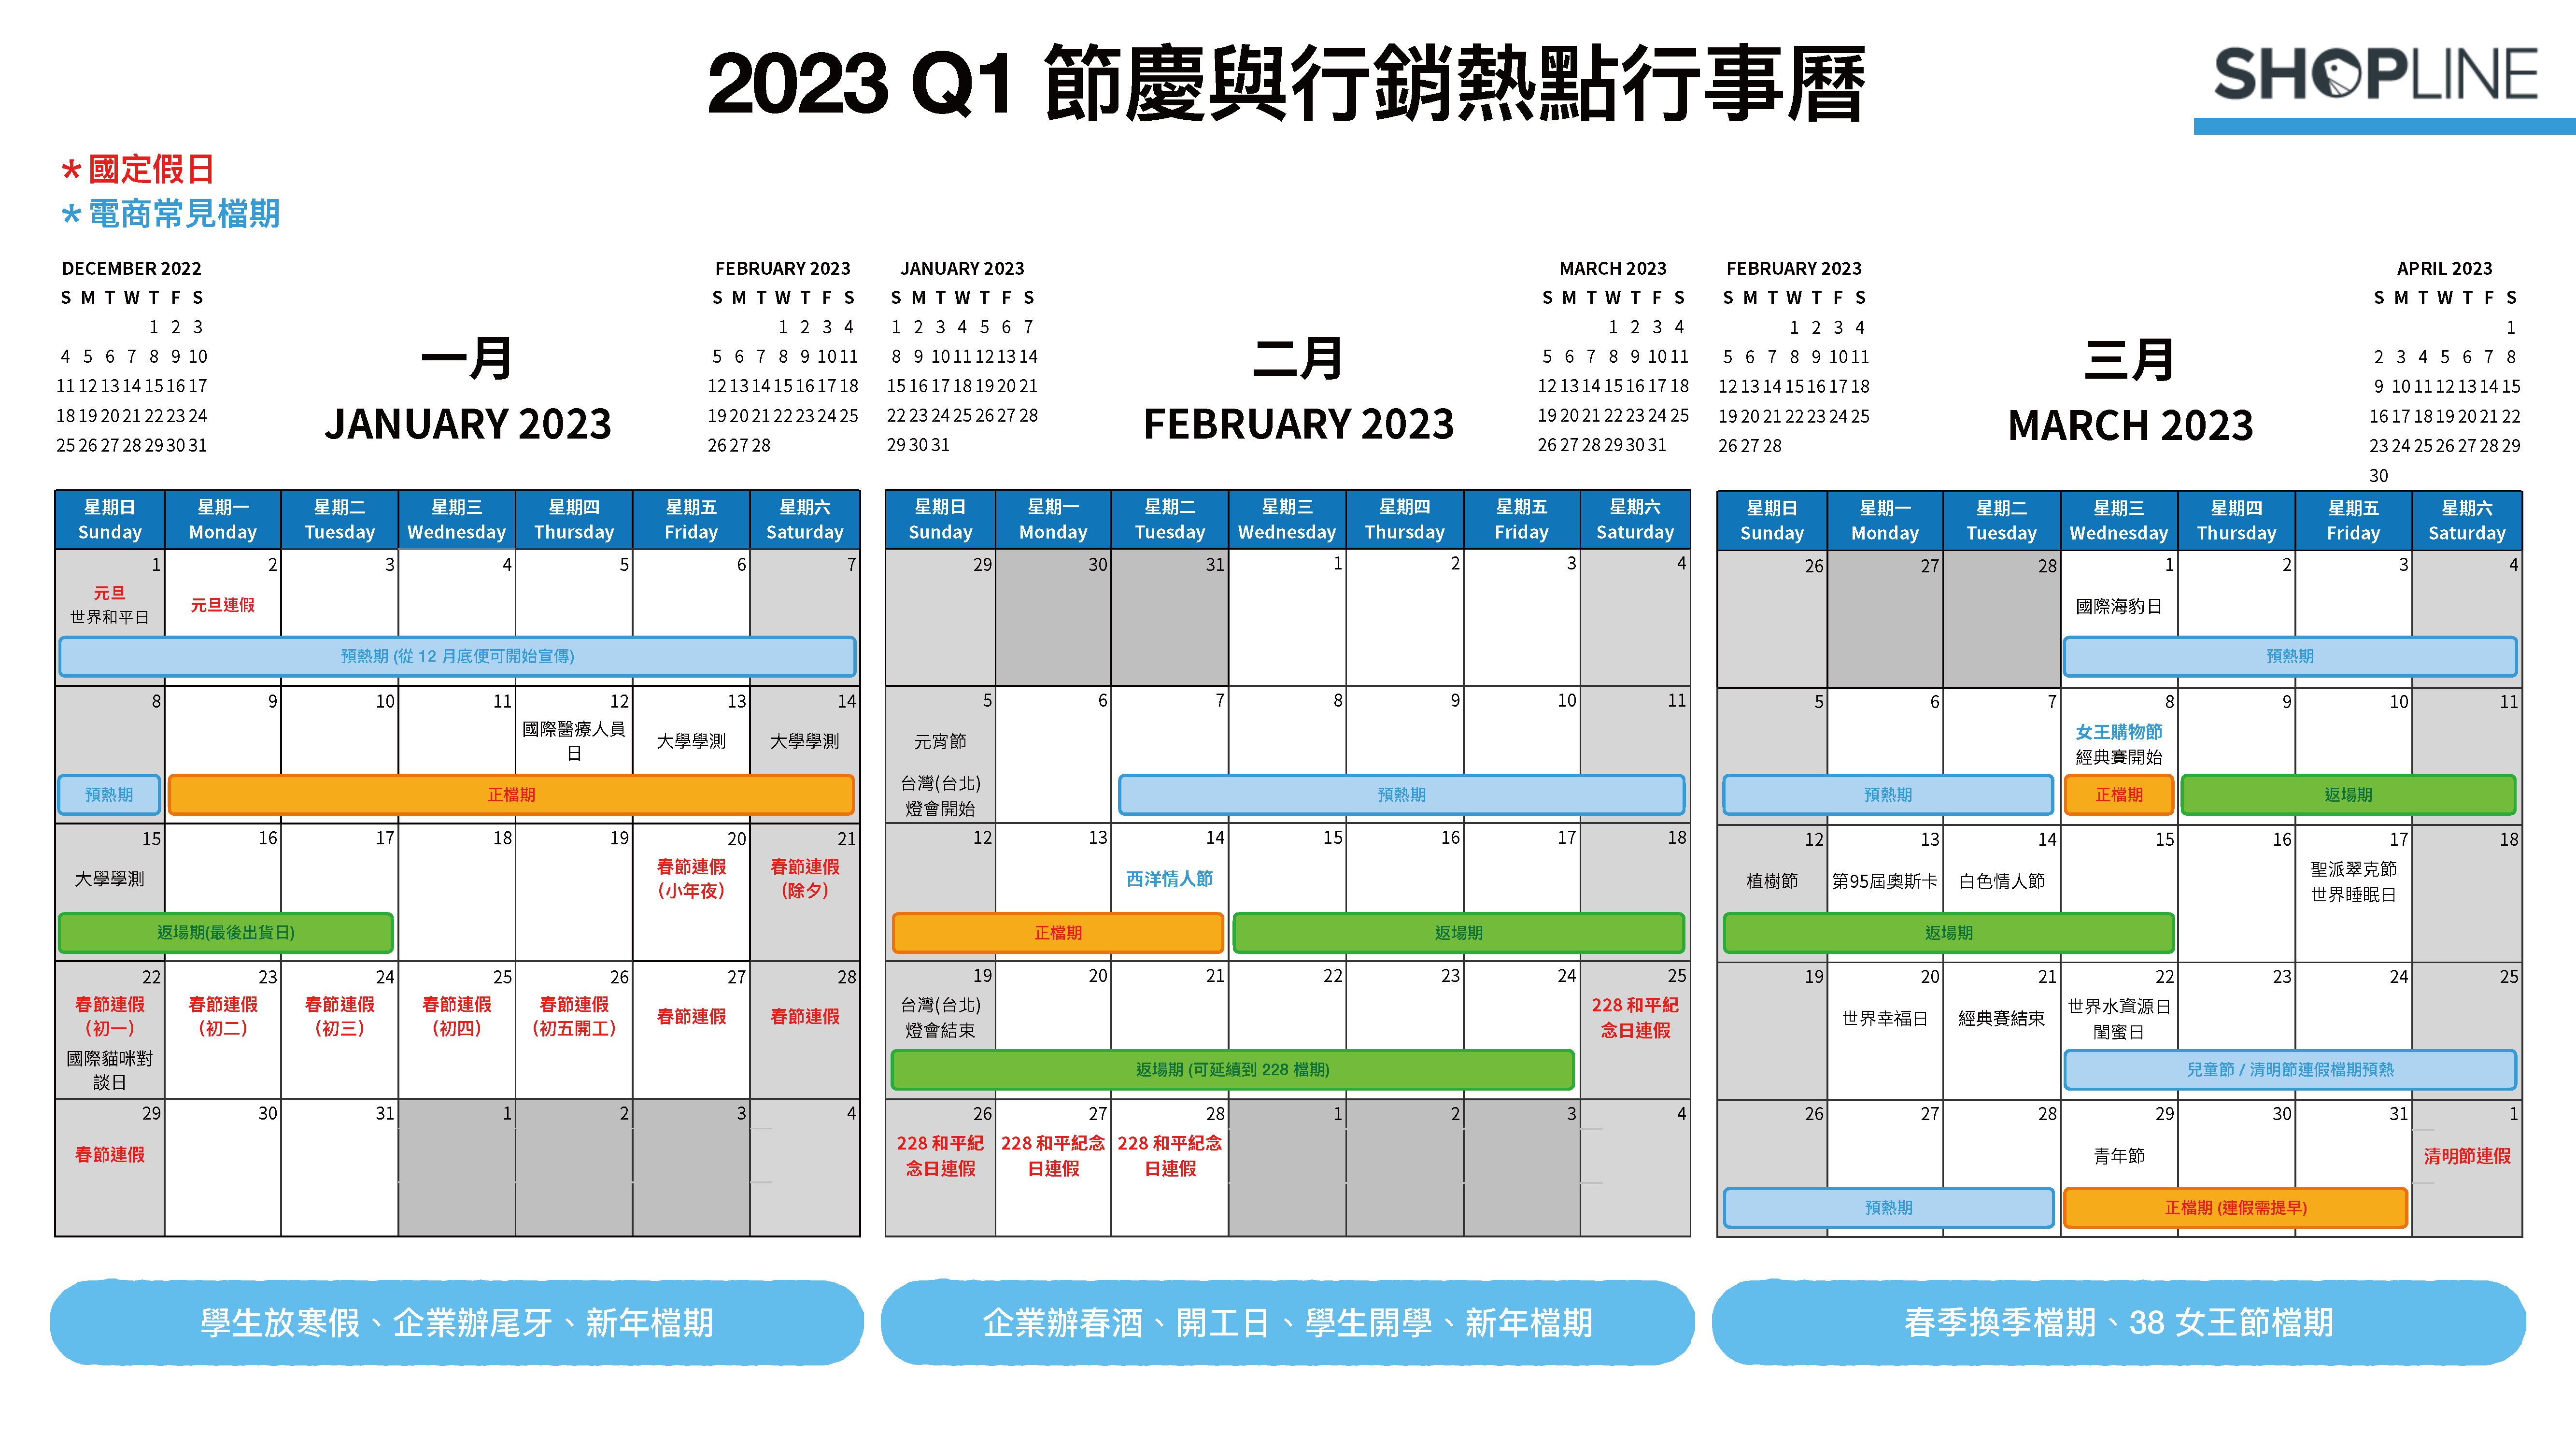 2023 Q1 節慶與行銷熱點月曆